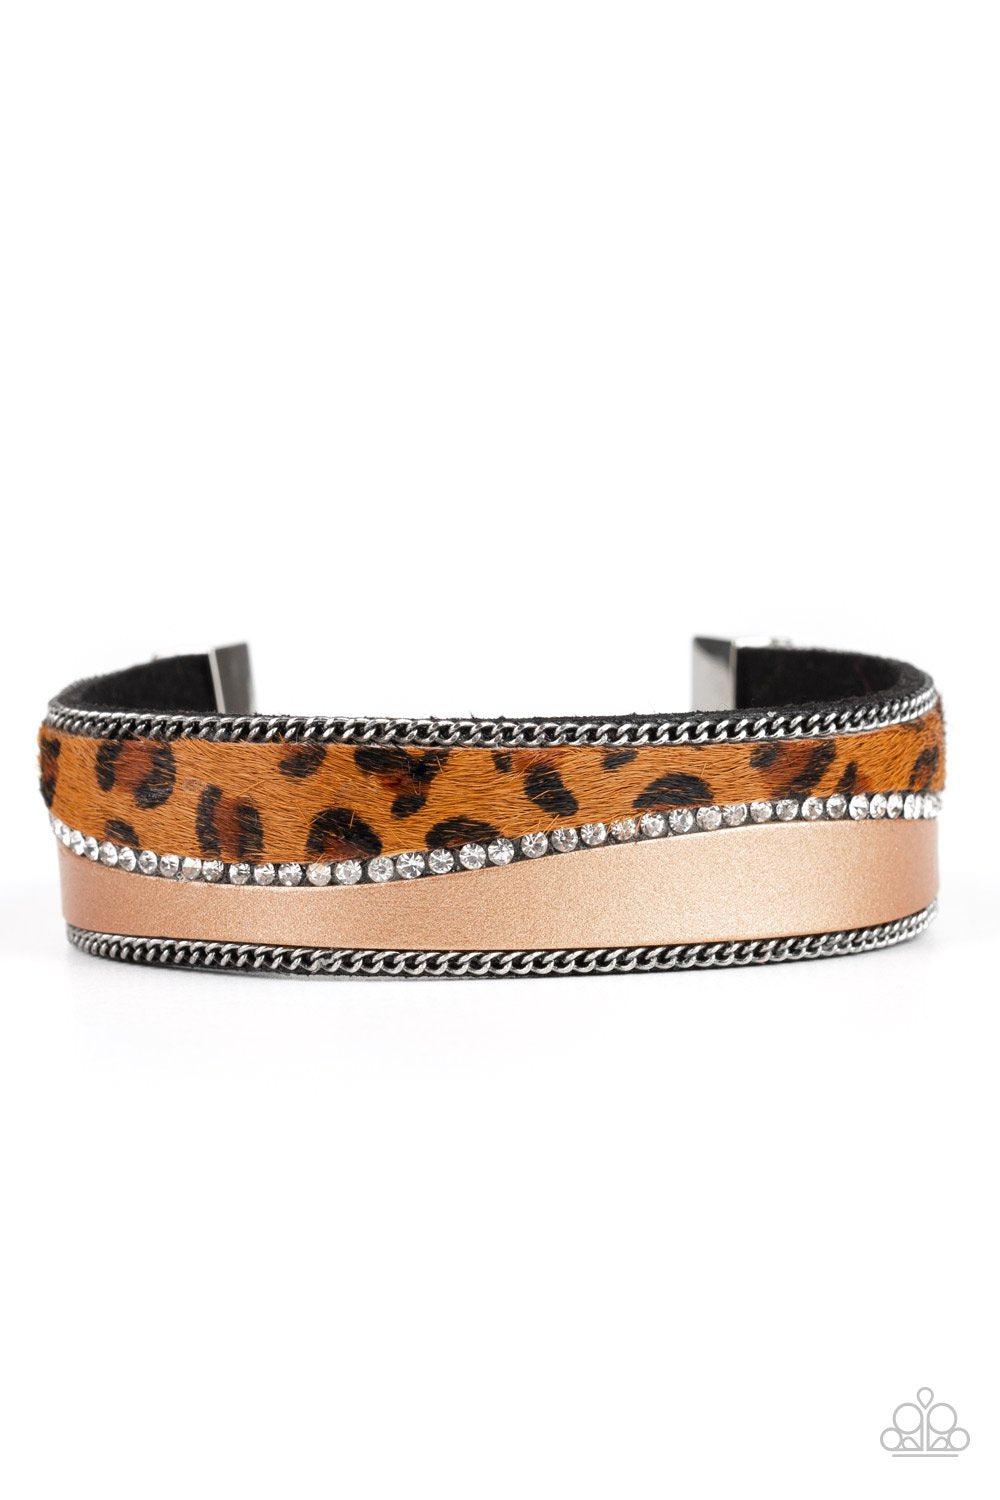 Flirtatiously Feline Brown Animal Print Bracelet - Paparazzi Accessories-CarasShop.com - $5 Jewelry by Cara Jewels